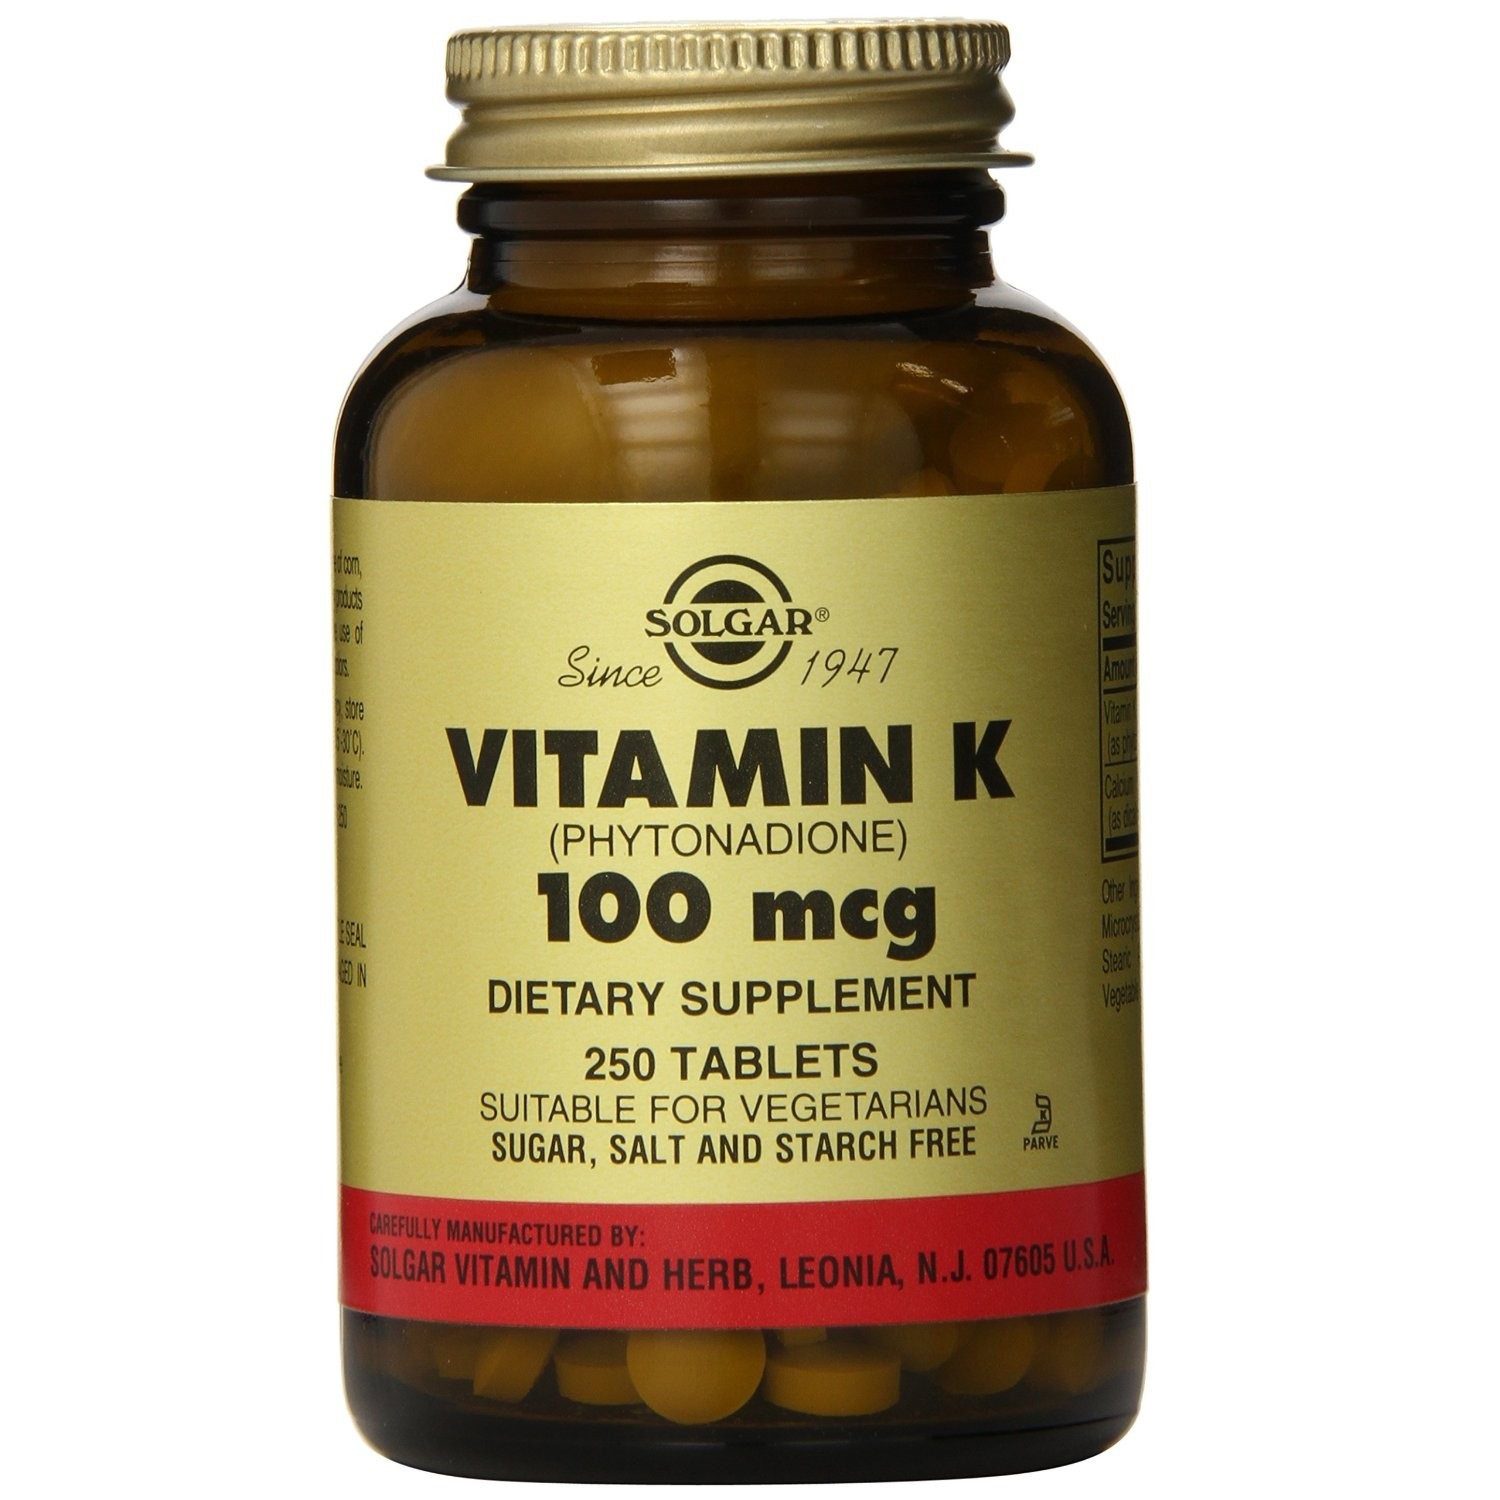 Solgar Vitamin K Supplement Buy Best Vitamin K Supplement Vitsupp